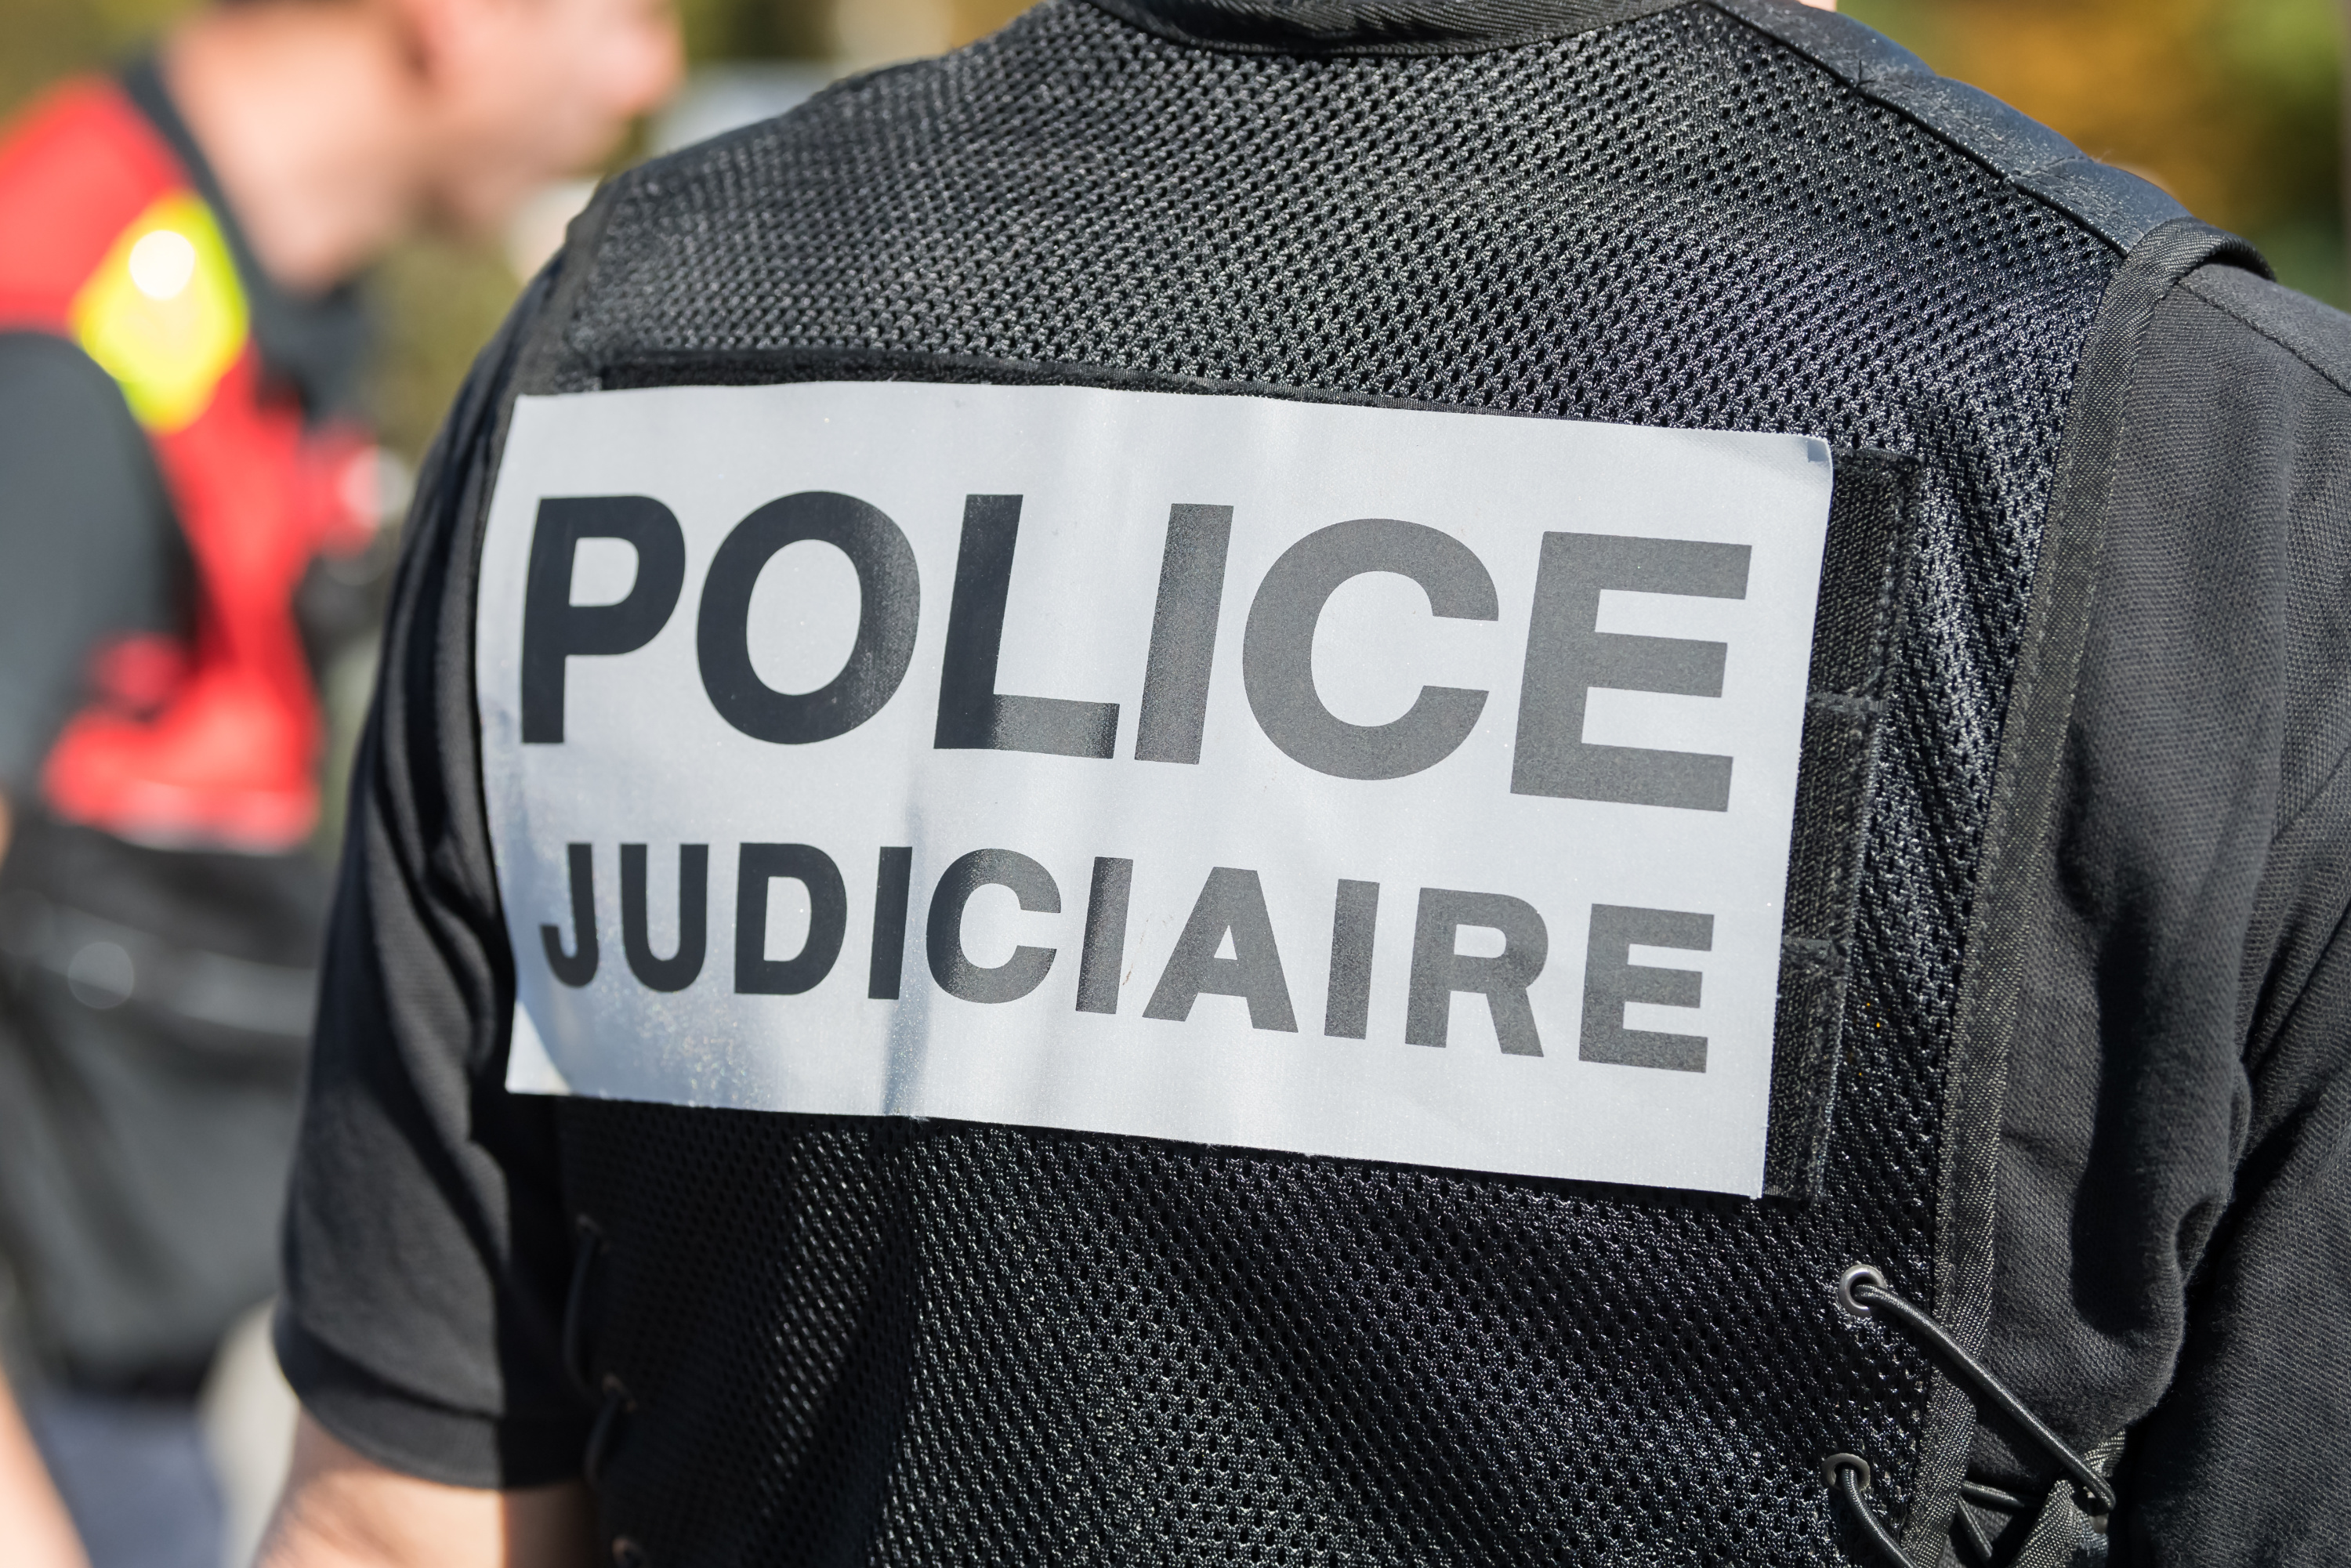 Seine-Saint-Denis : une jeune femme retrouvée nue et mutilée en pleine rue à Aubervilliers